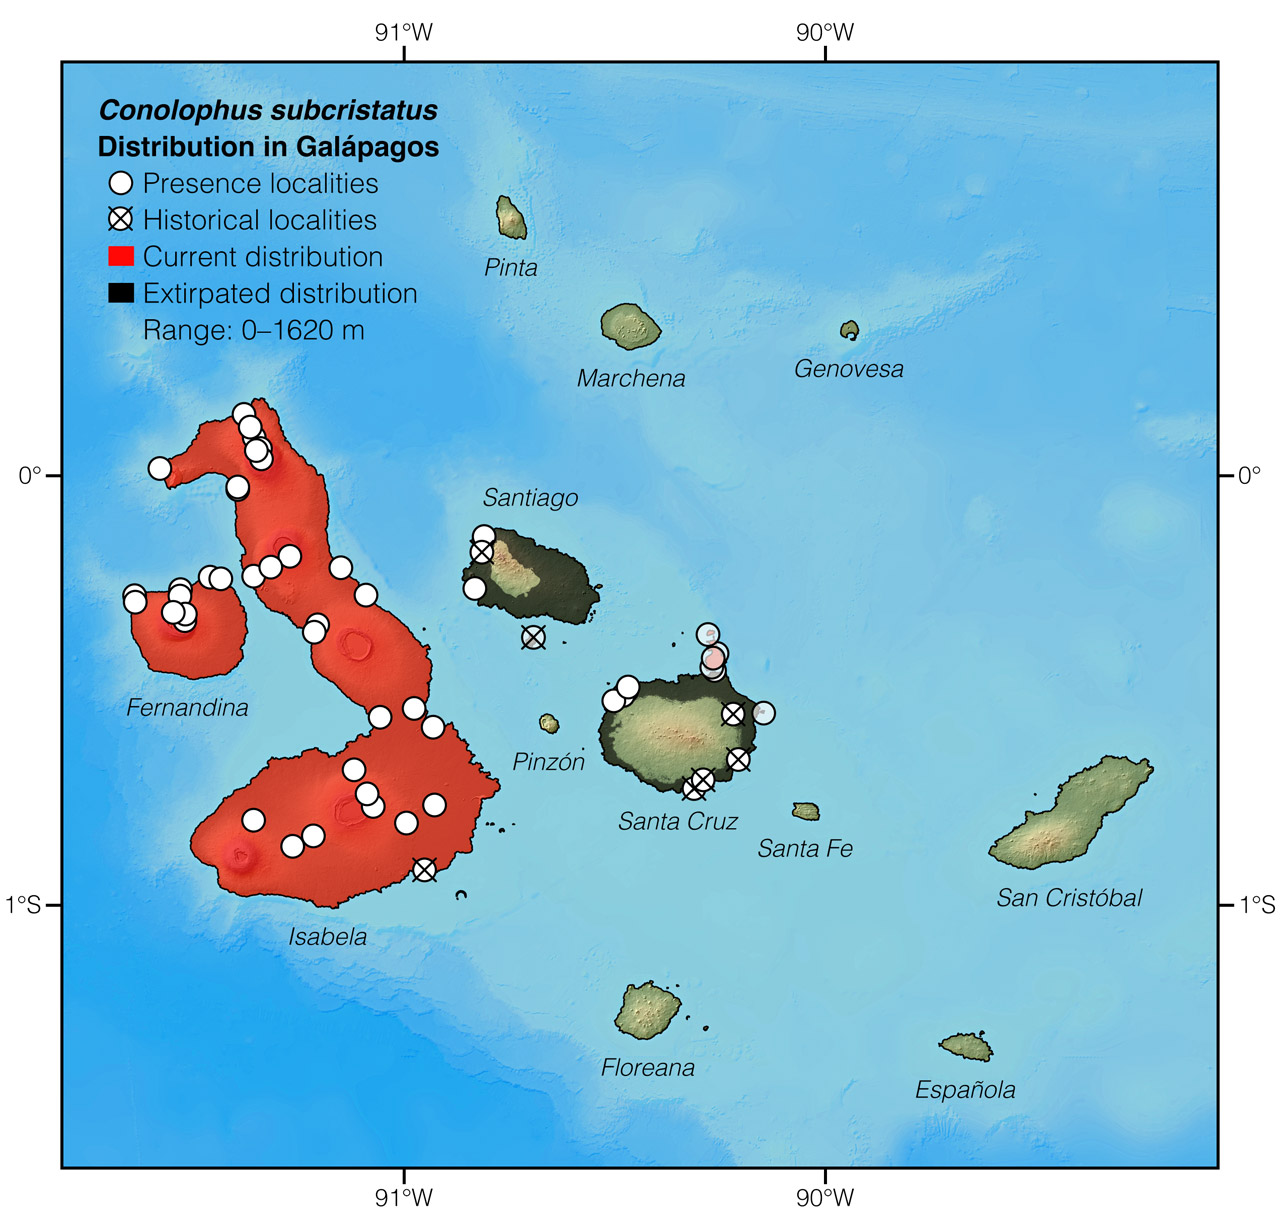 Distribution of Conolophus subcristatus in Galápagos